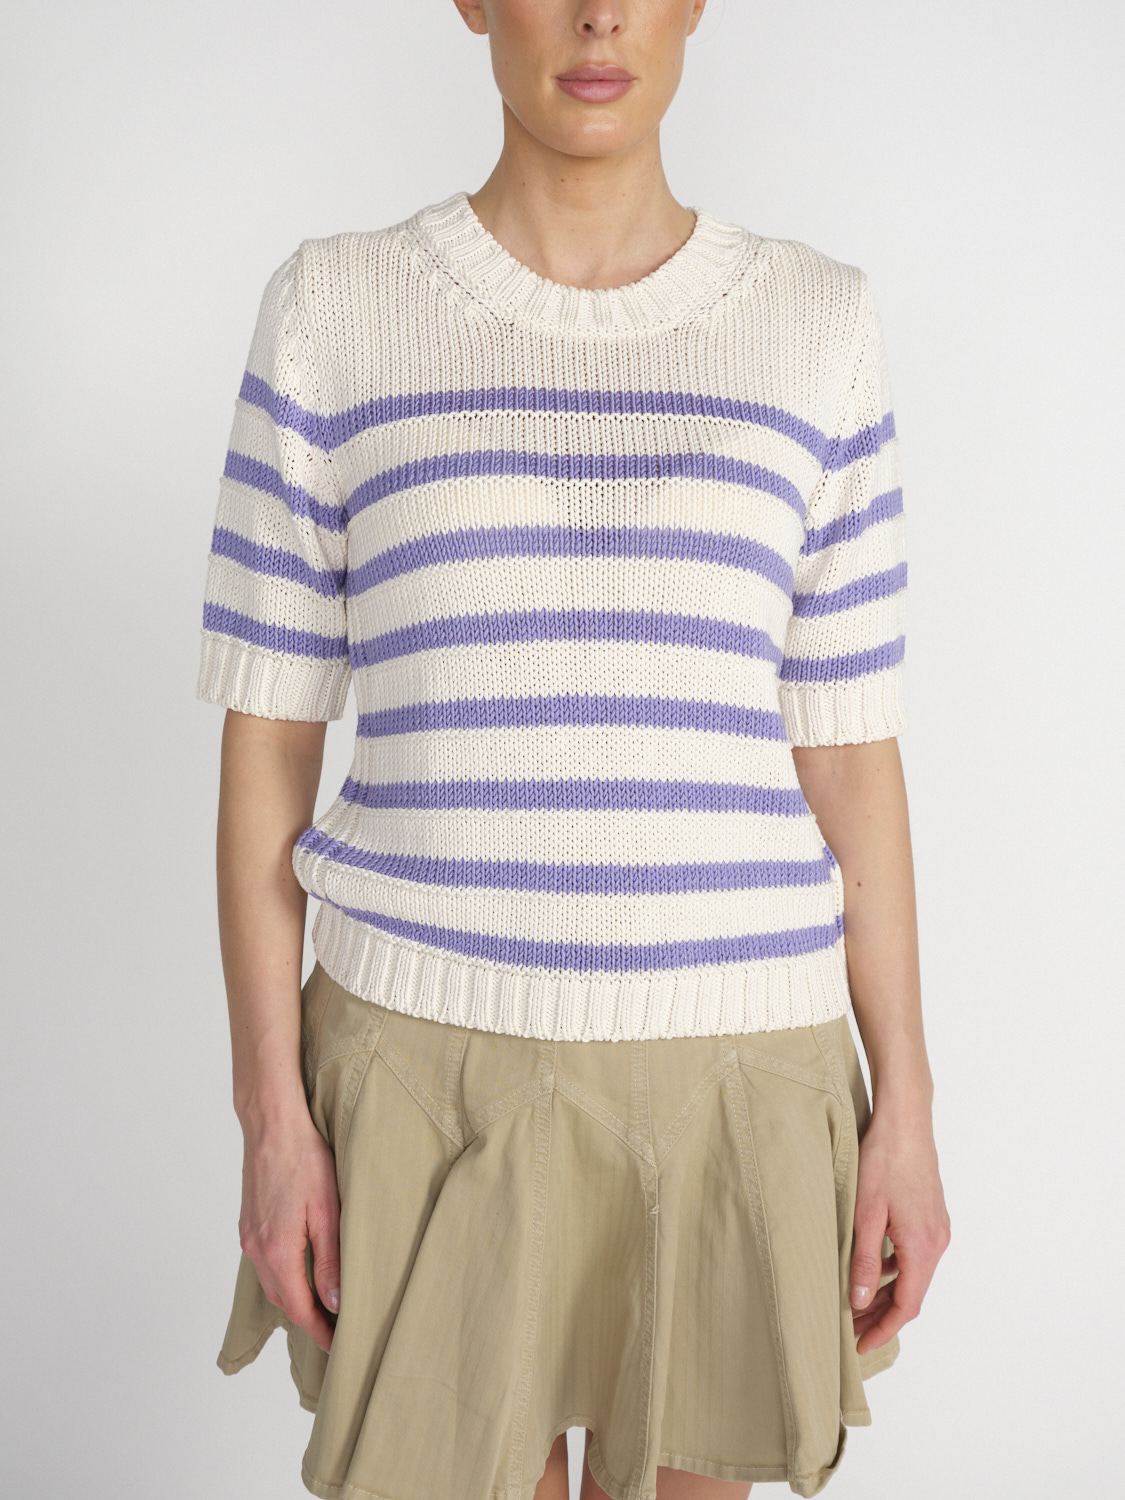 Iris von Arnim Pallas - Short-sleeved sweater with a striped design  white M